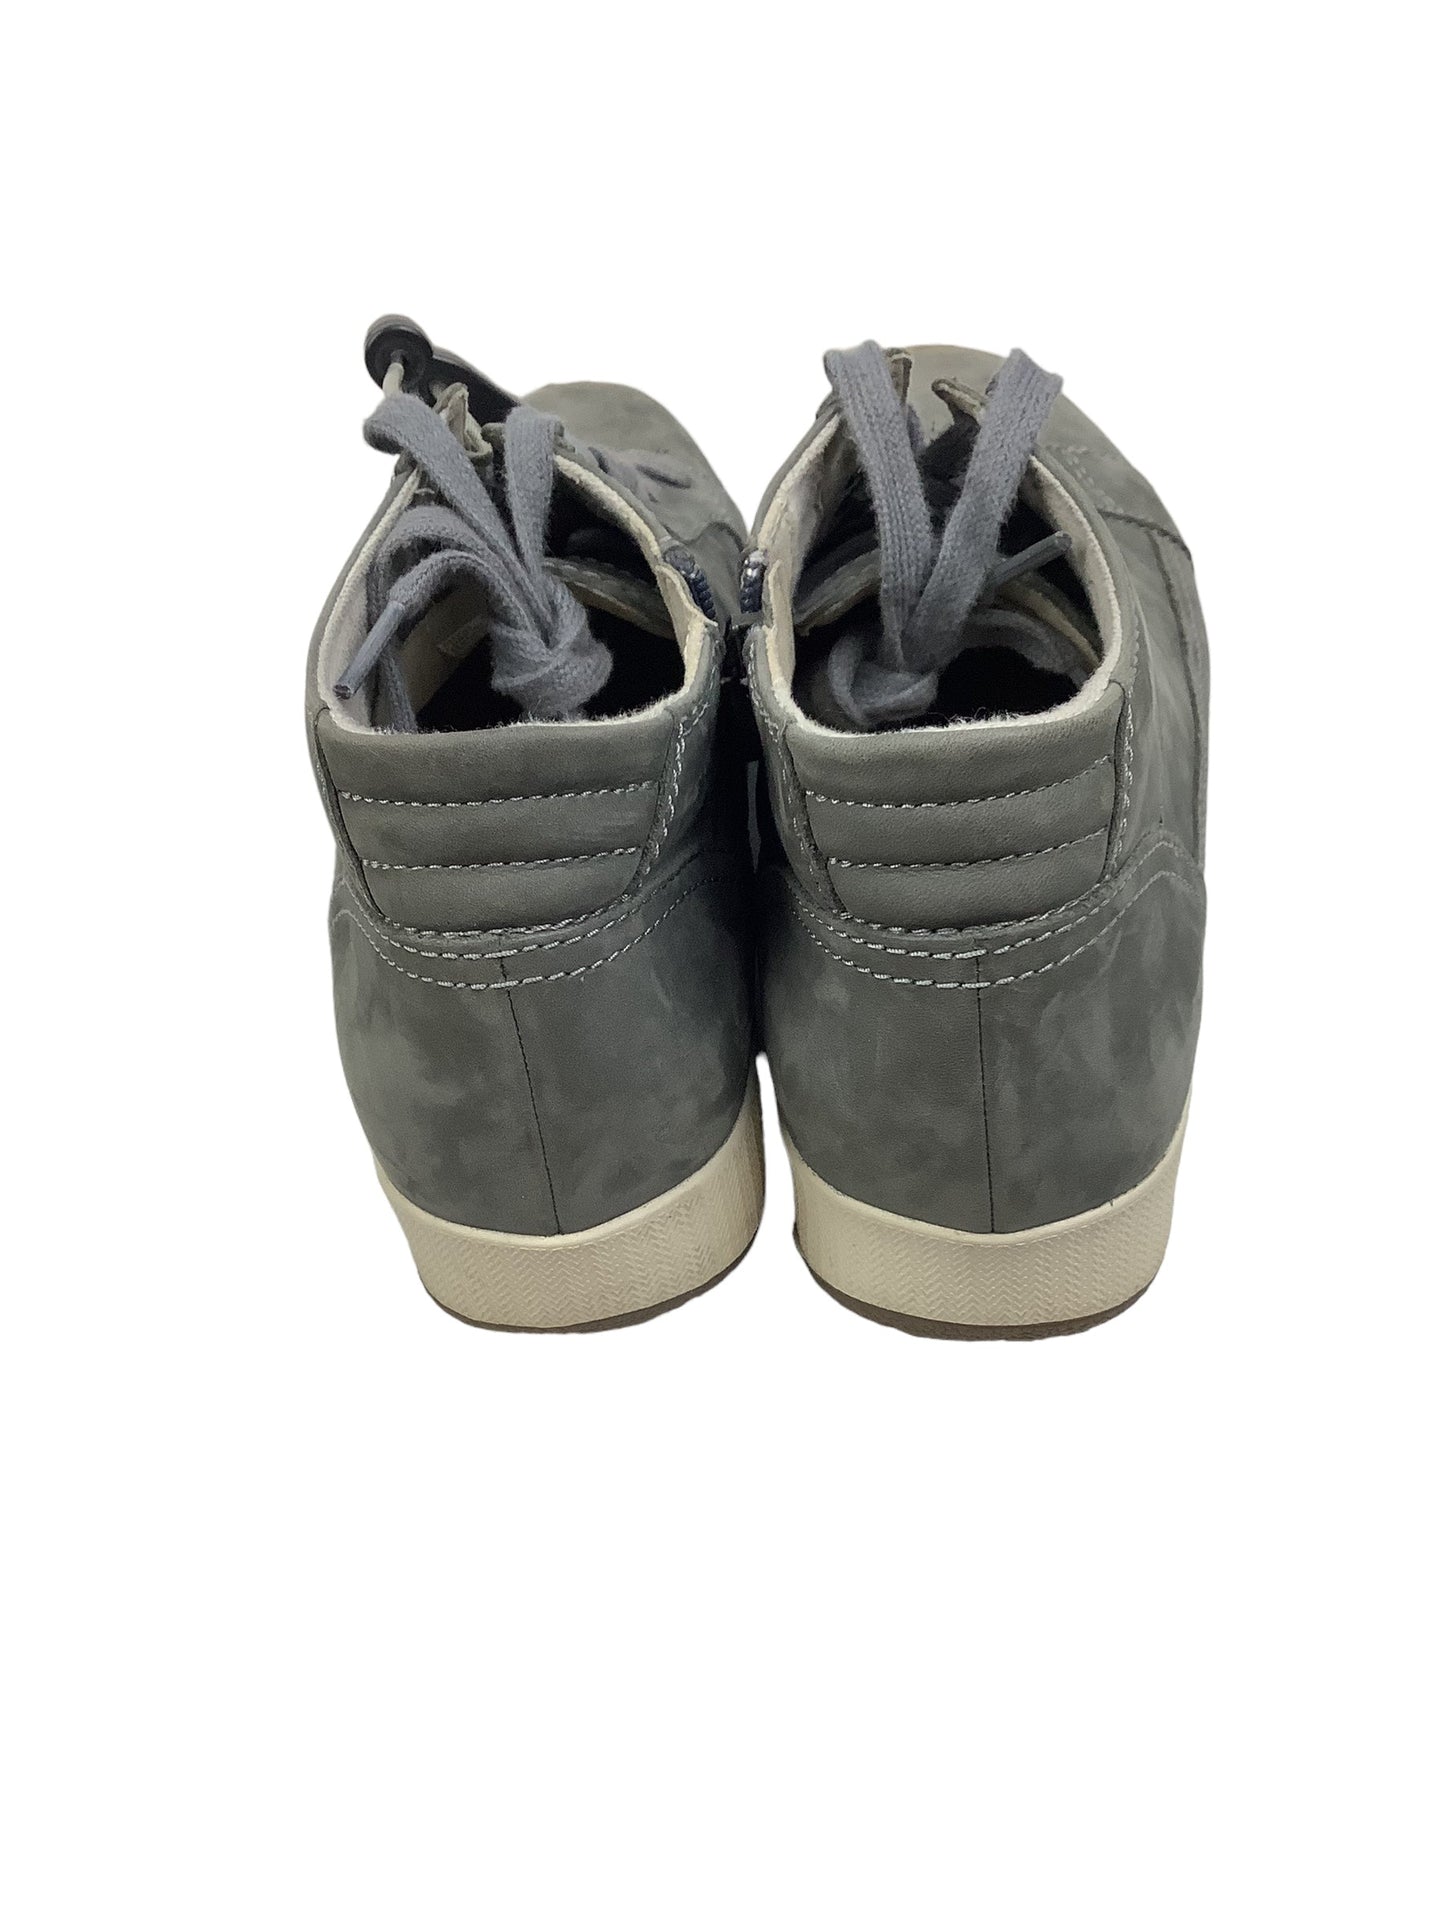 Shoes Sneakers By Dansko  Size: 10.5